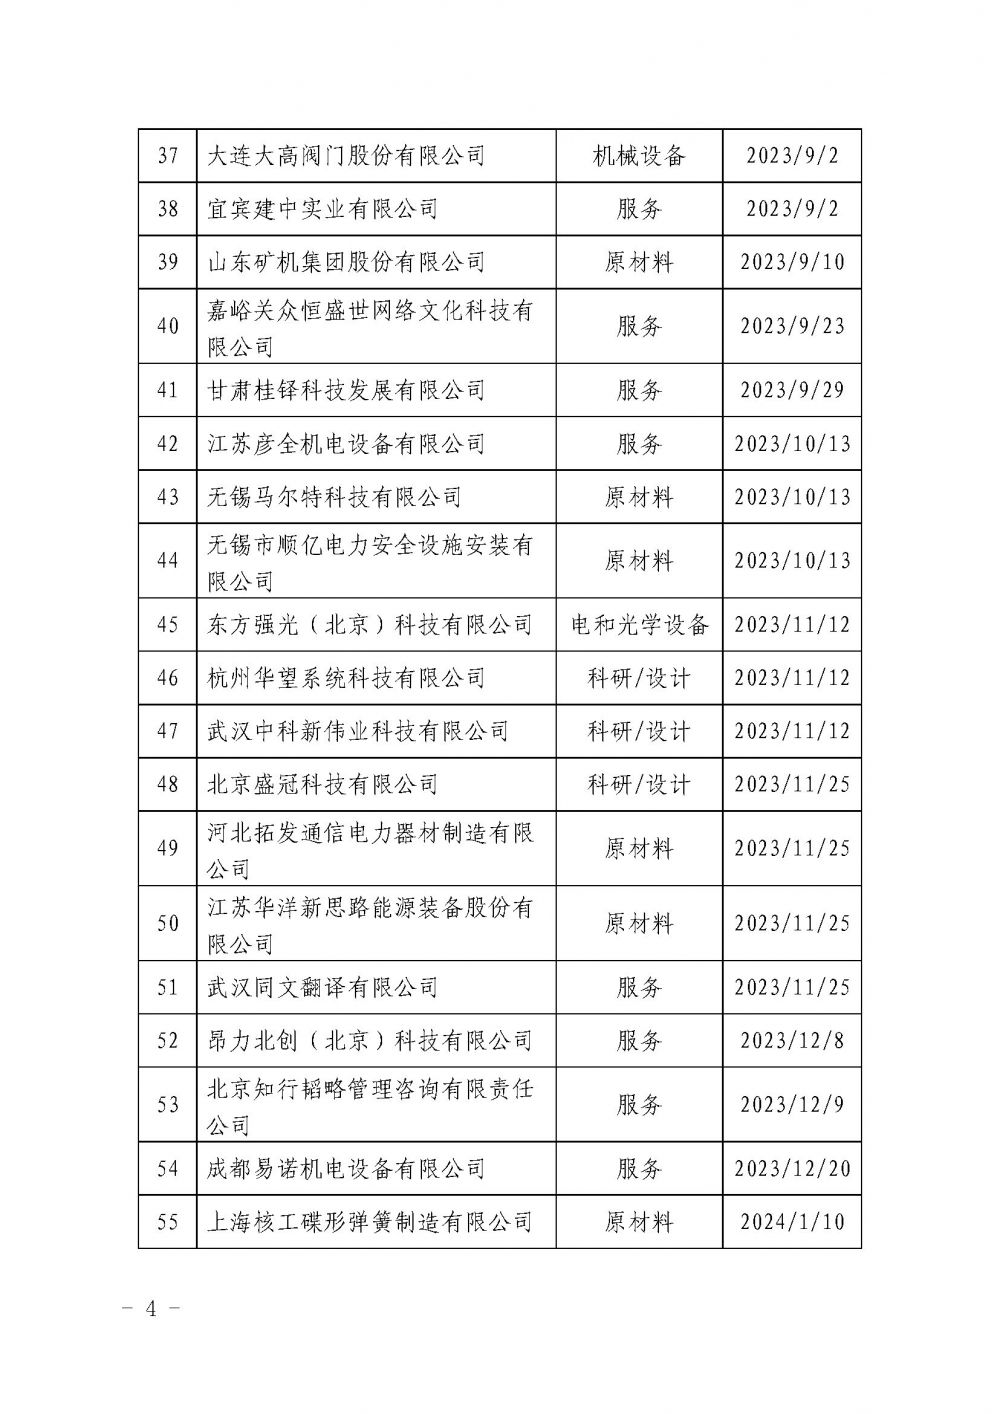 关于发布中国核能行业协会核能行业第十批合格供应商名录的公告_页面_4.jpg